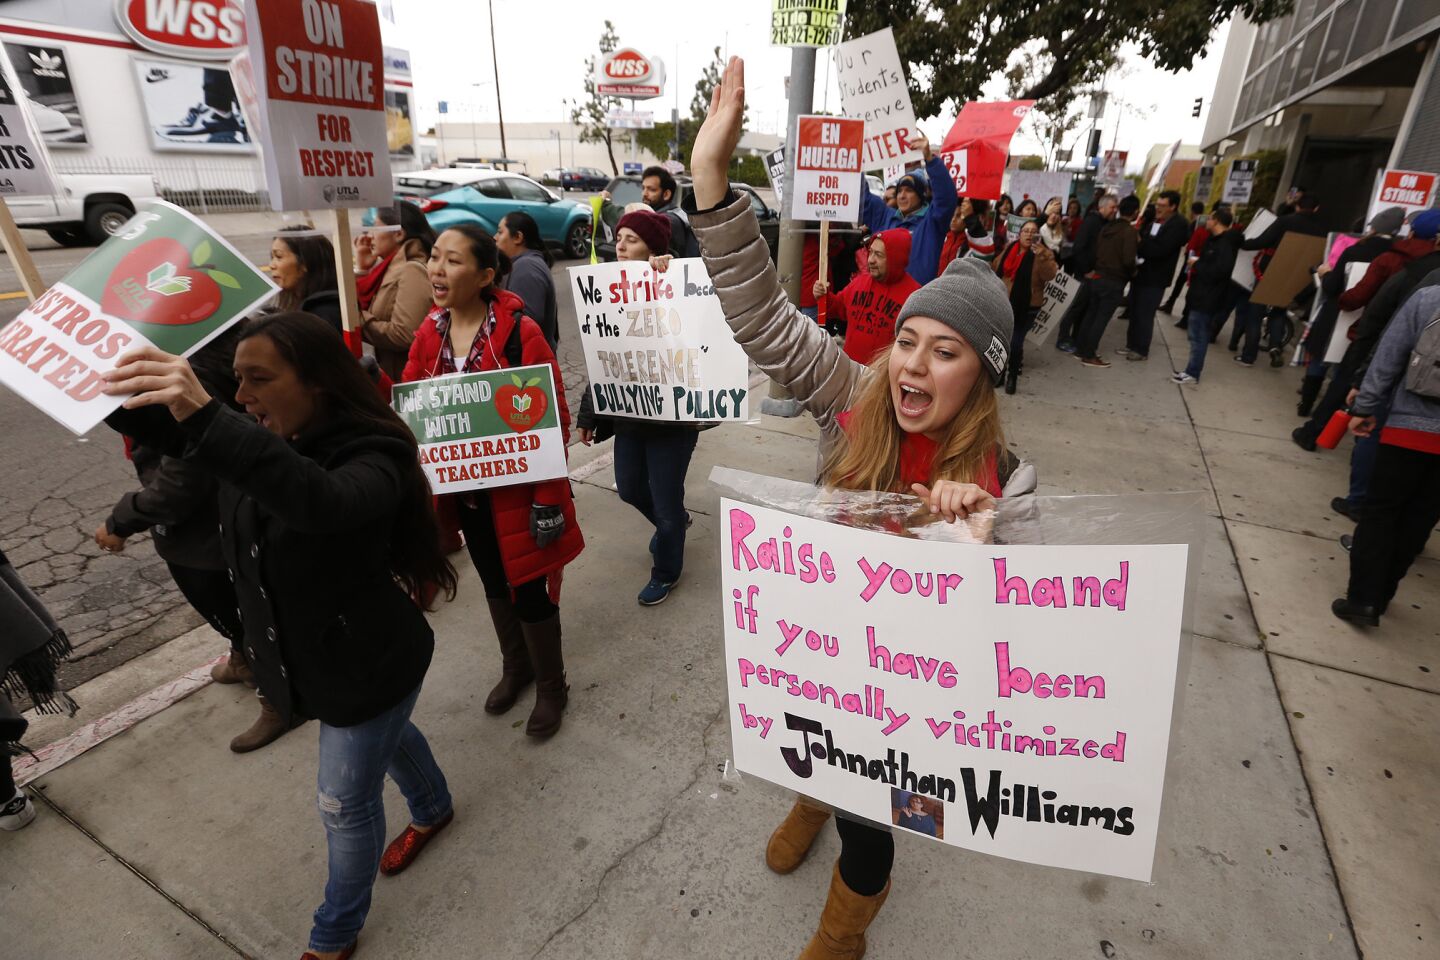 L.A. teachers go on strike